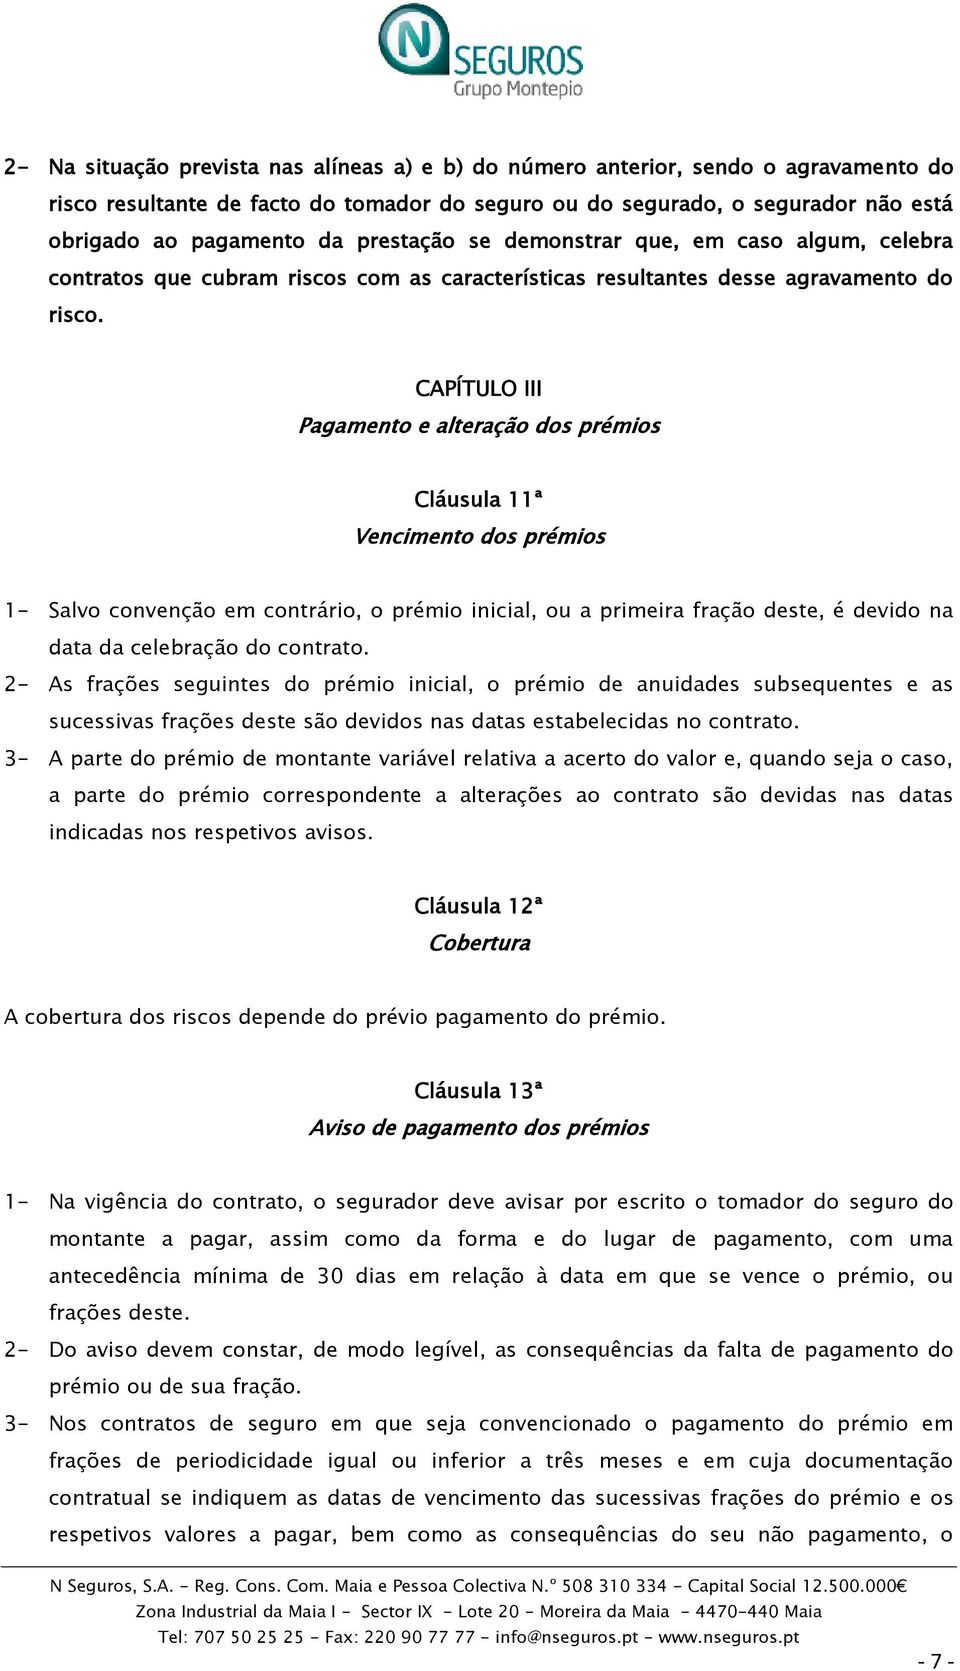 CAPÍTULO III Pagamento e alteração dos prémios Cláusula 11ª Vencimento dos prémios 1- Salvo convenção em contrário, o prémio inicial, ou a primeira fração deste, é devido na data da celebração do